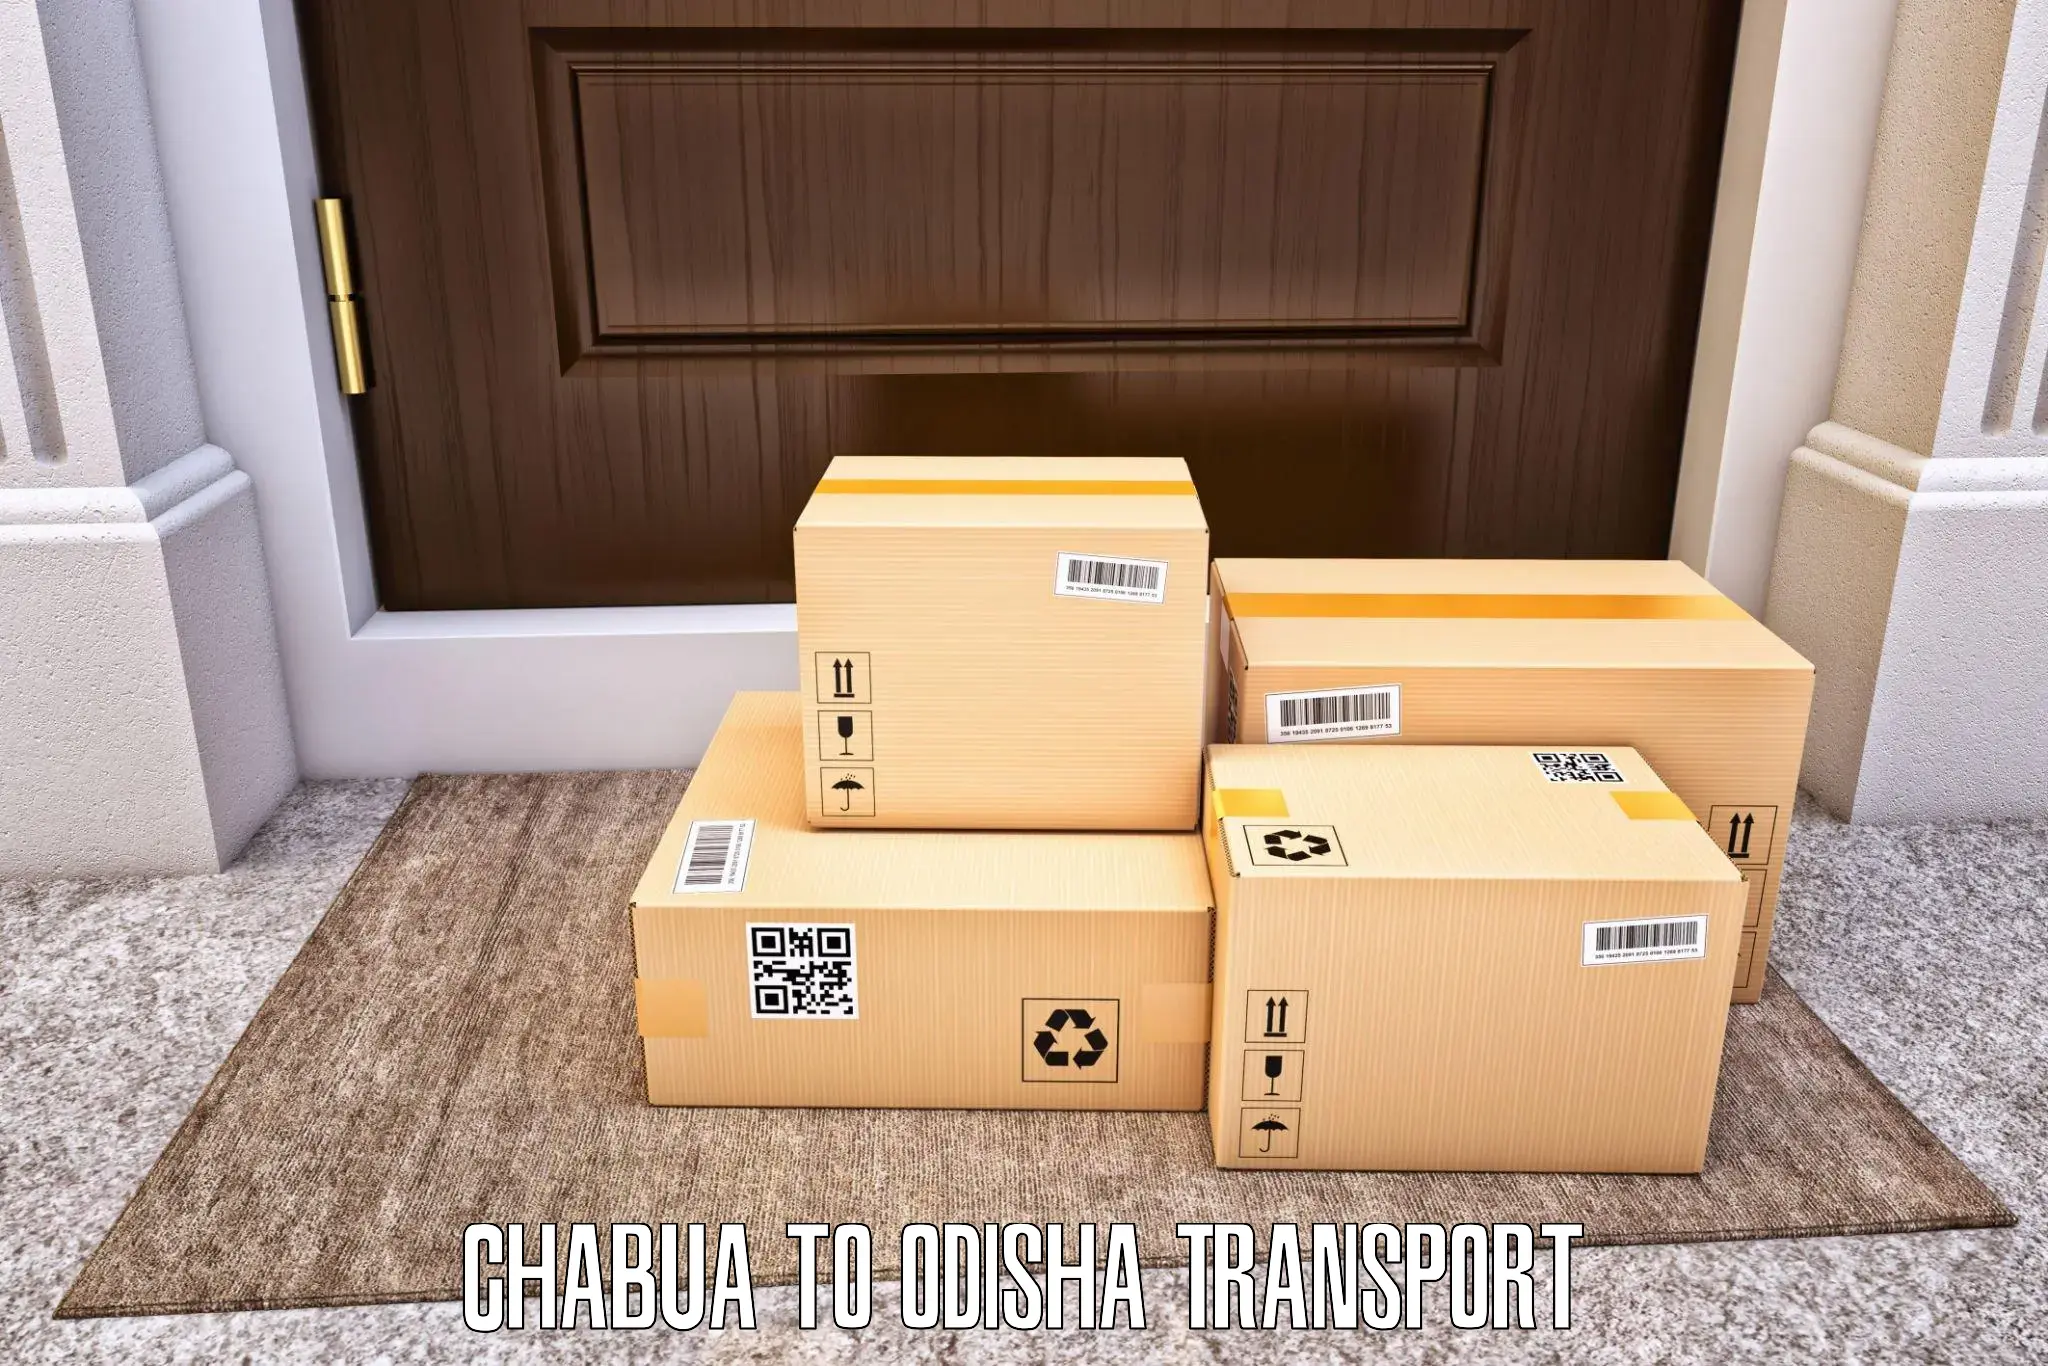 Interstate transport services Chabua to Rairakhol